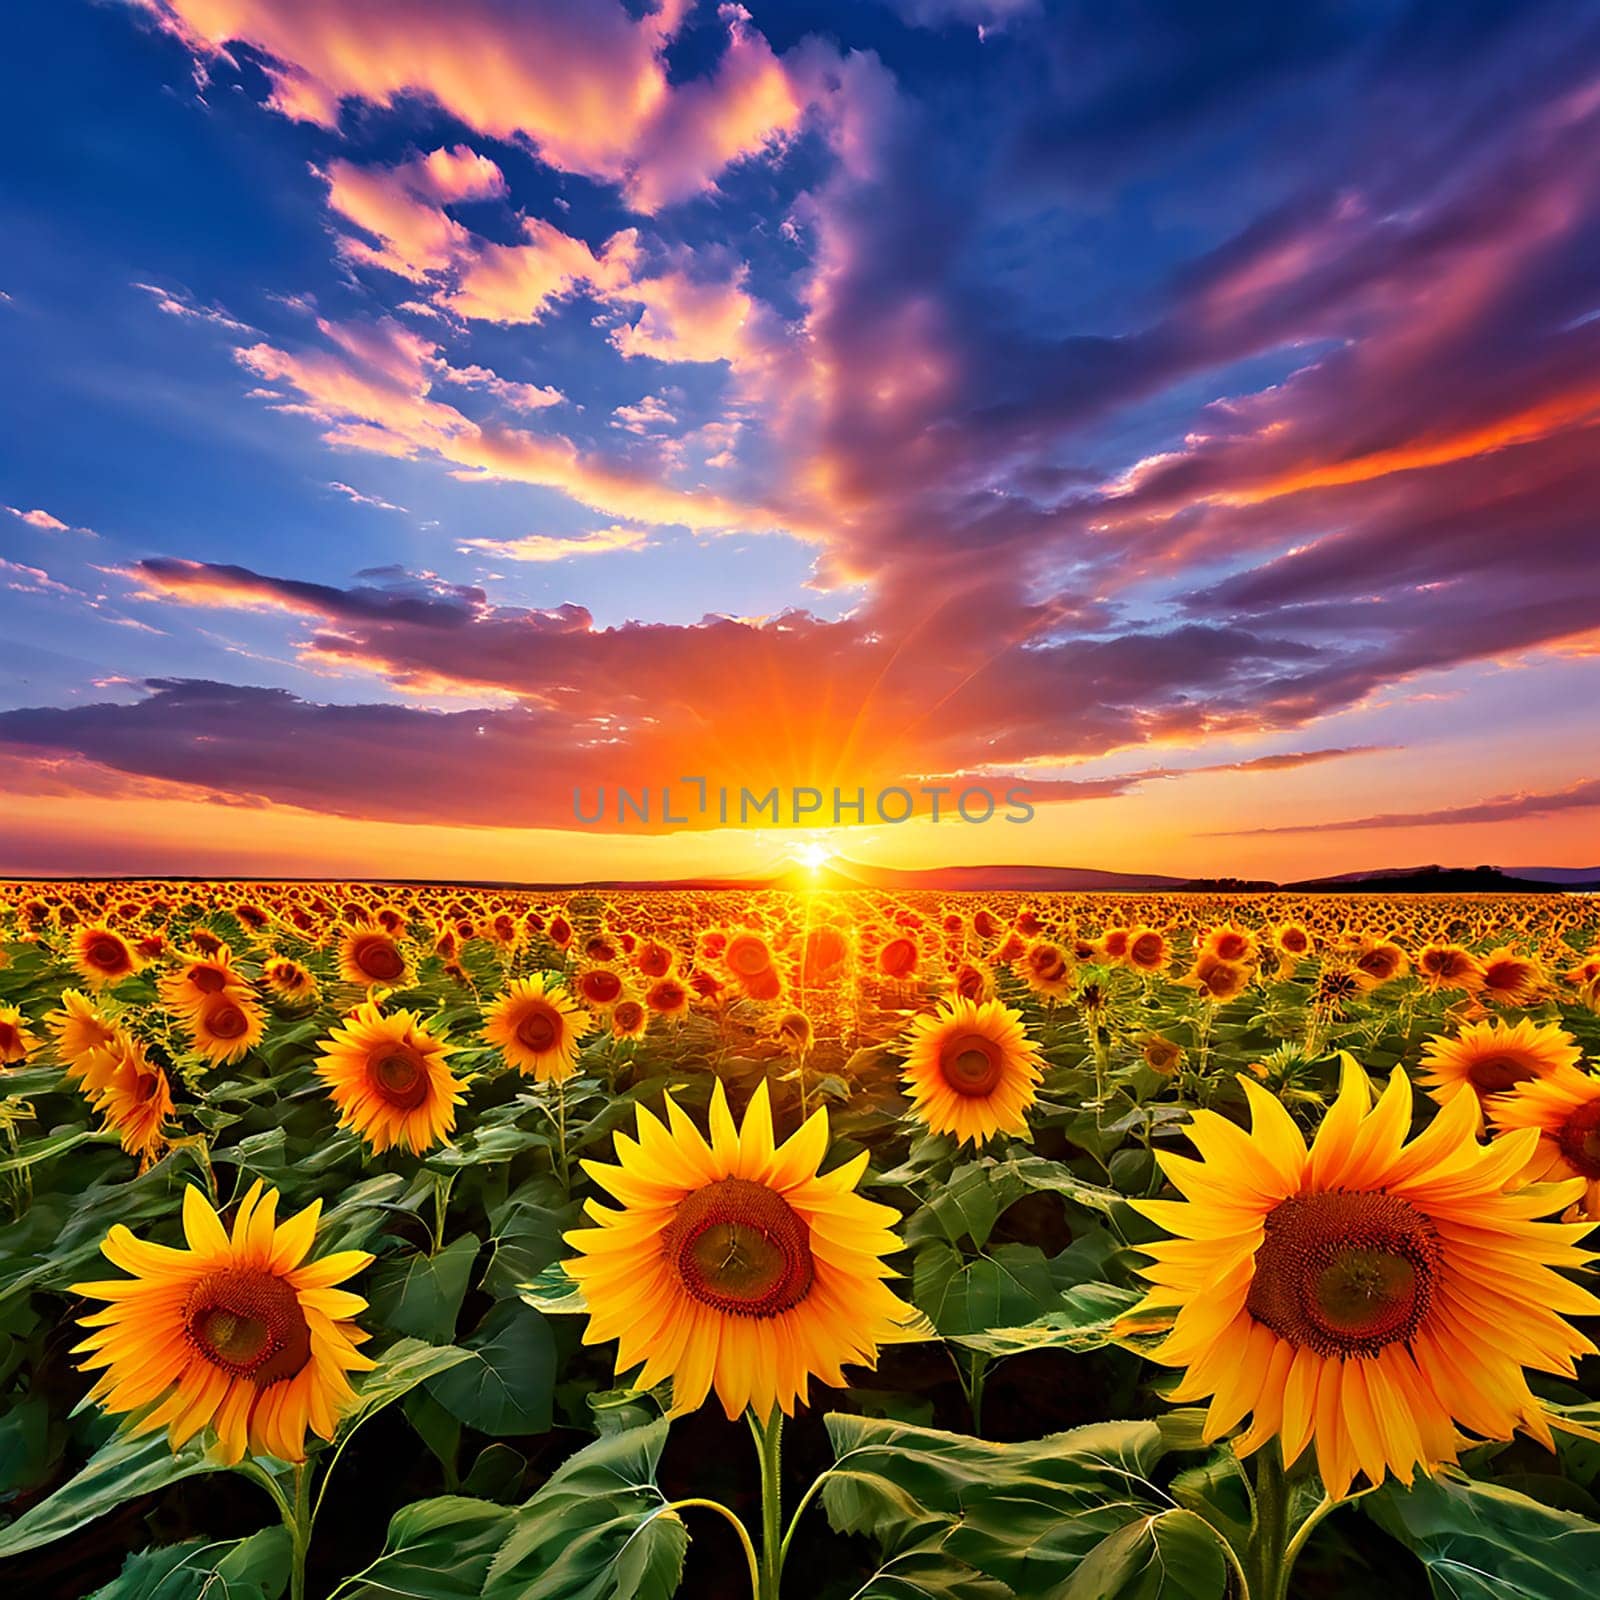 Sunflower Field Glistening in the Sunset